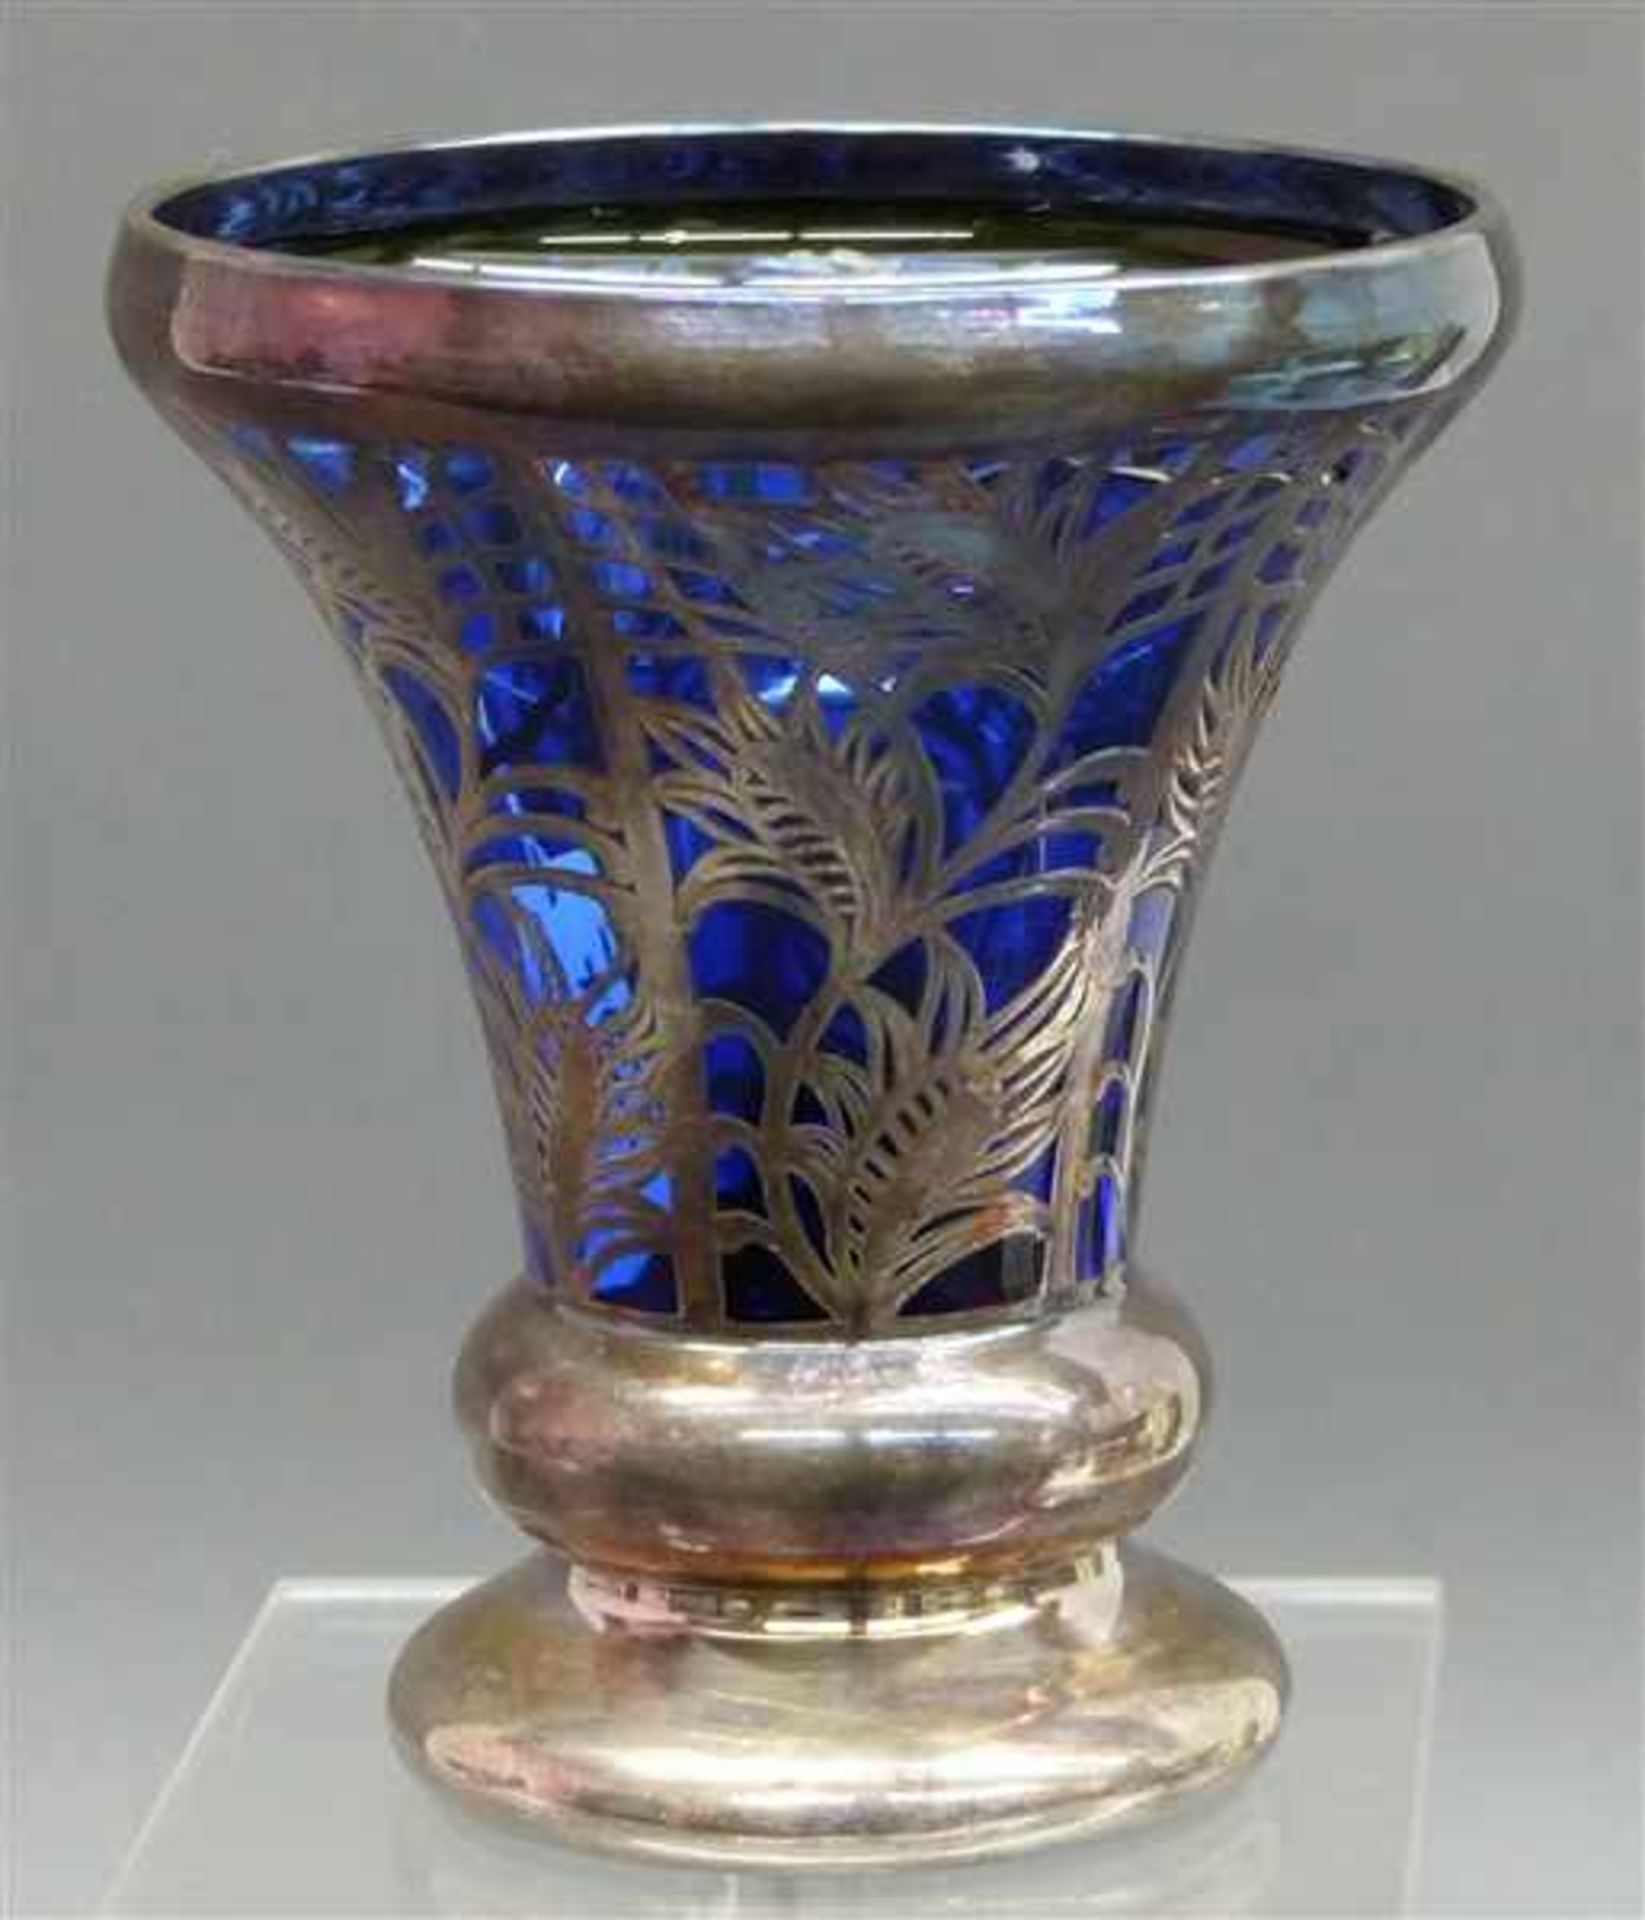 Freundschaftsbecherblaues Glas, beschädigt, mit aufwändigem Silberdekor, h 12,5 cm,